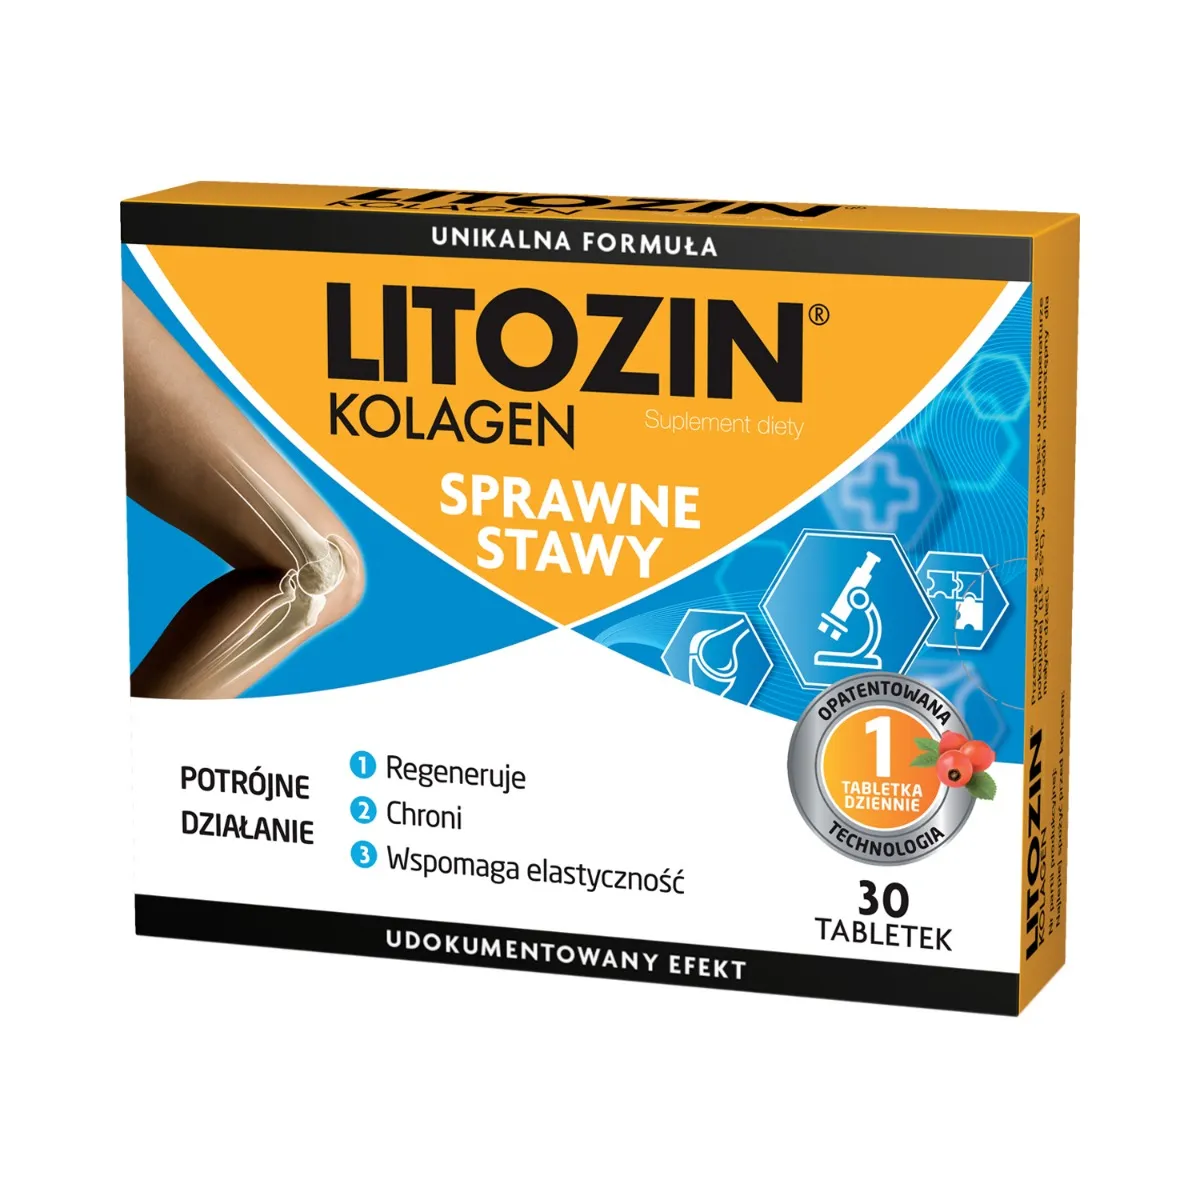 Litozin Kolagen, suplement diety, 30 tabletek